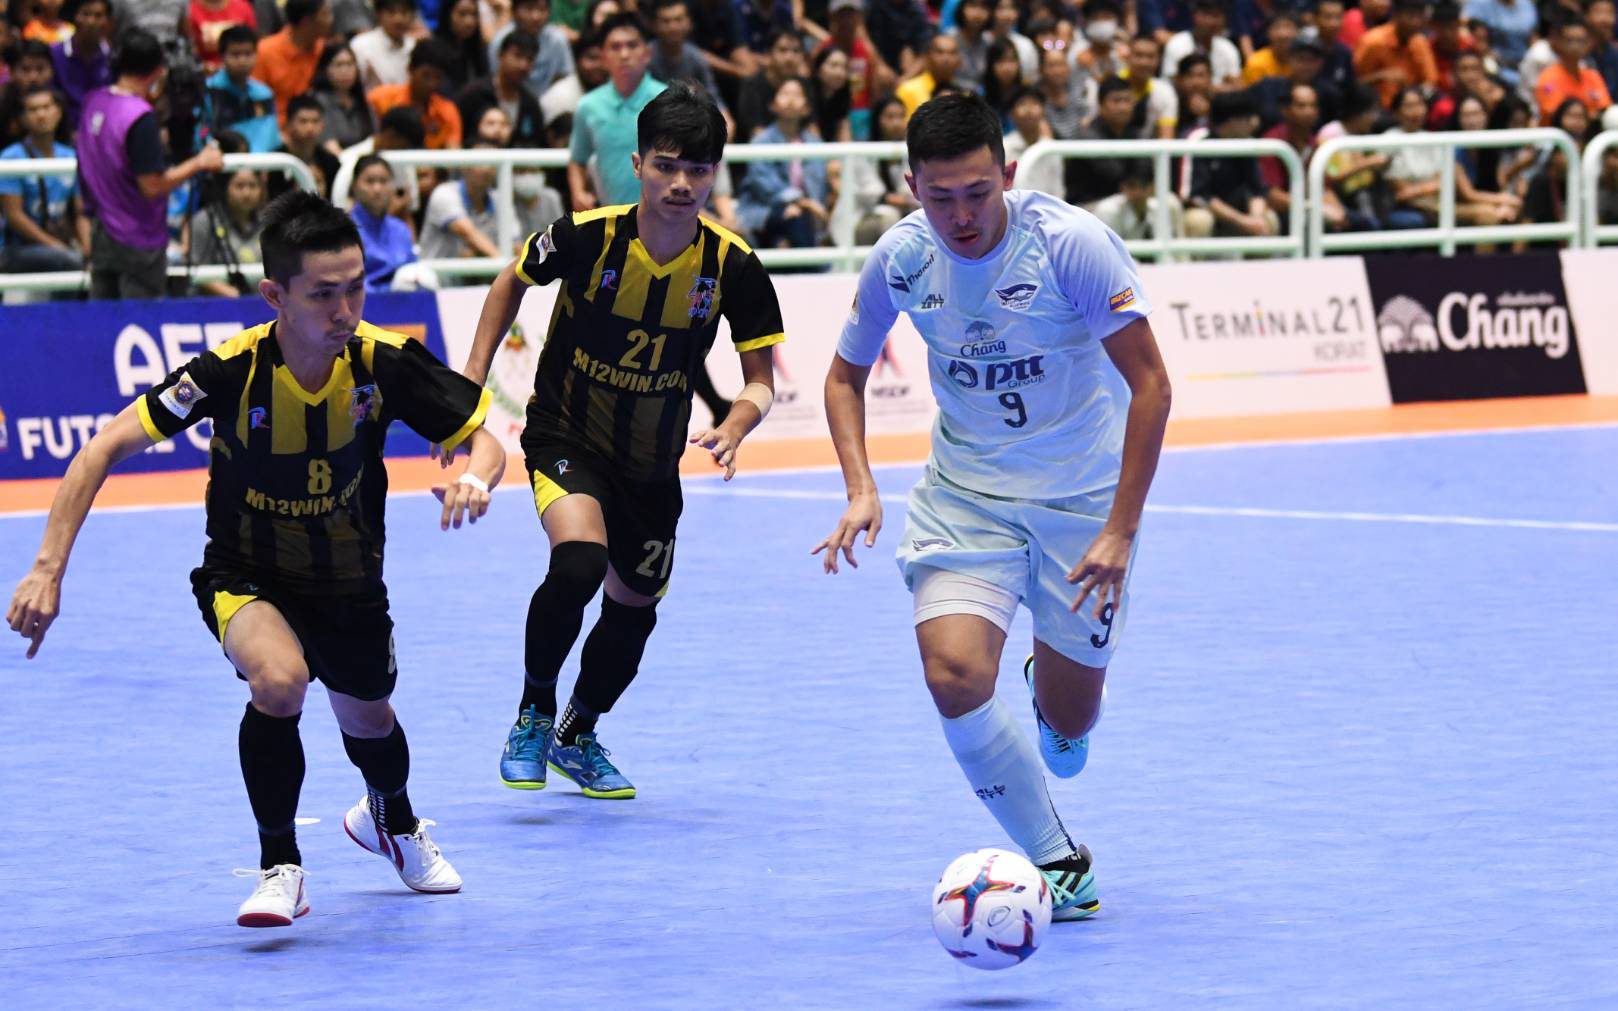 บลูเวฟ ชลบุรี ยิงเยอะจัด 17 – 0 สร้างสถิติใหม่พร้อมเข้าชิง AFF FUTSAL CUP 2019